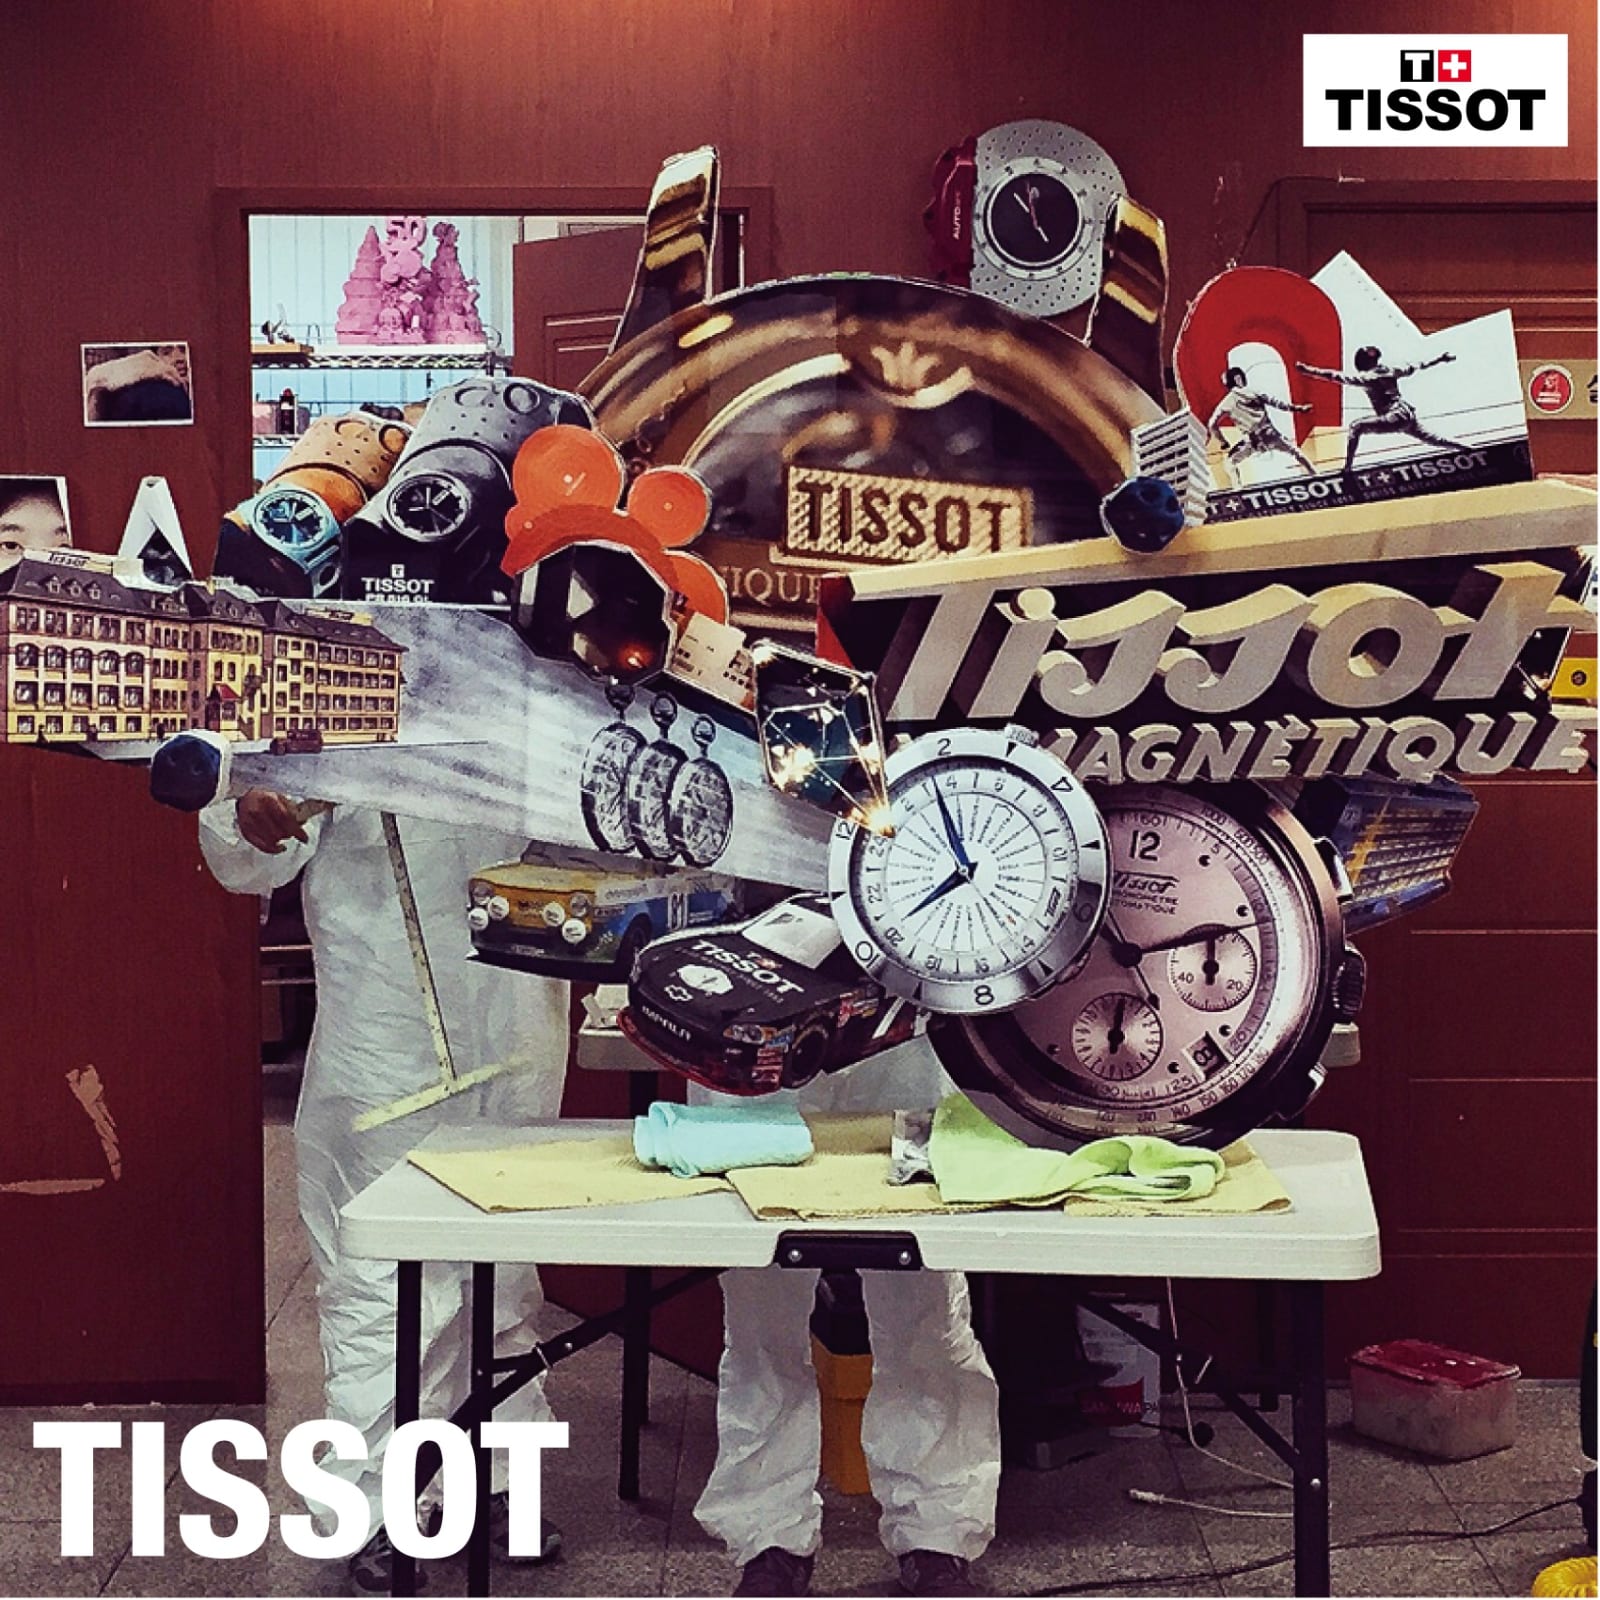 Tissot 2015